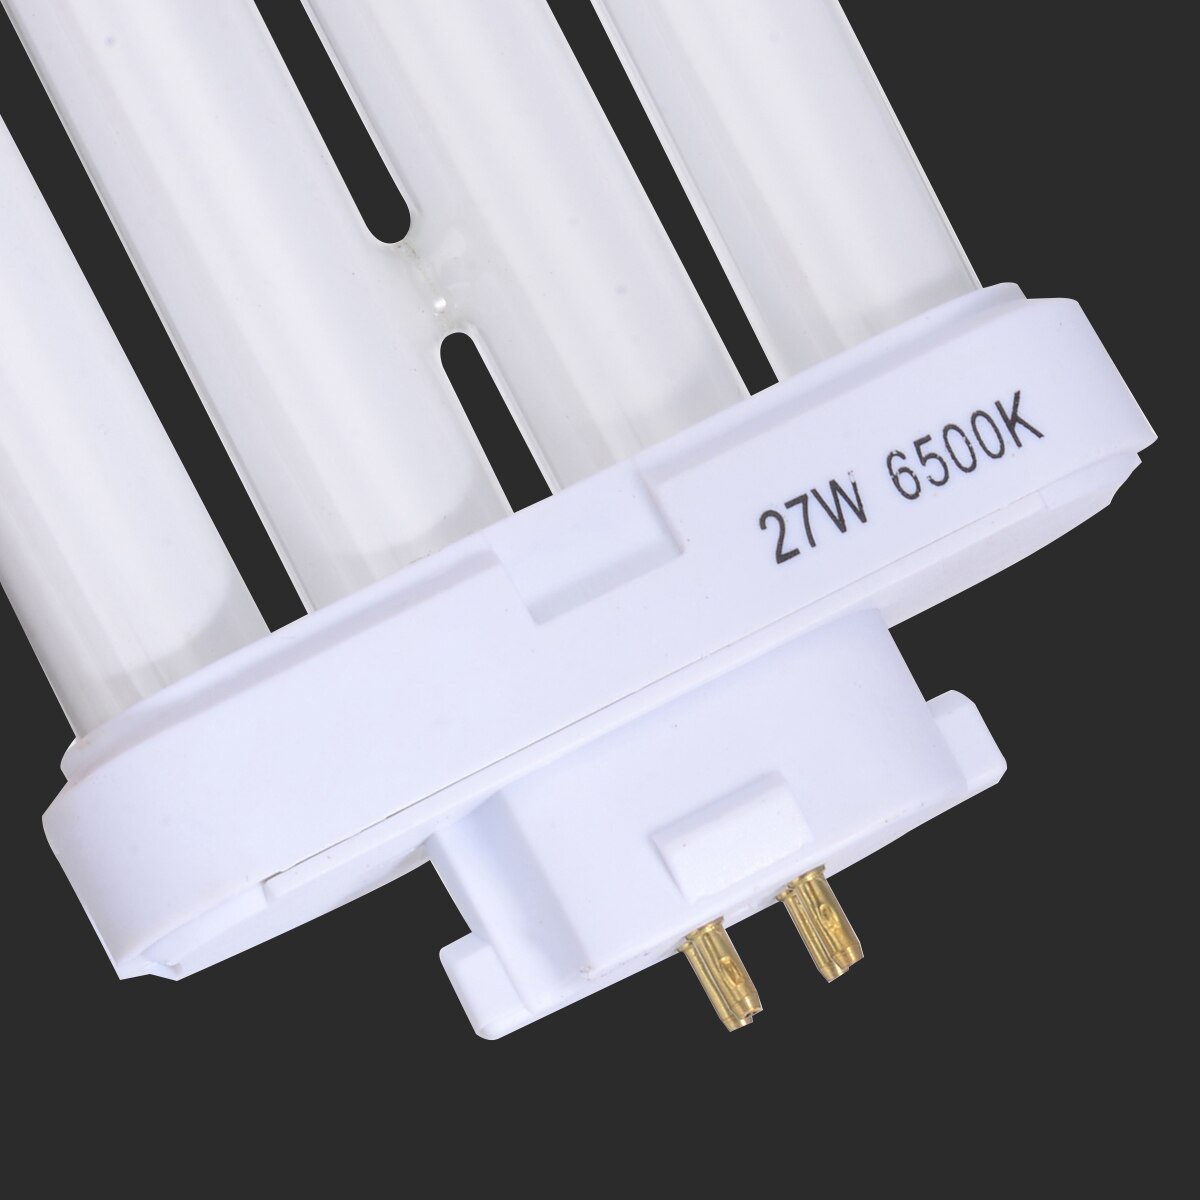 Højeffektivt energibesparende lys 27w fml 27/65k 4- pin quad tube lysstofrør ren hvide lys